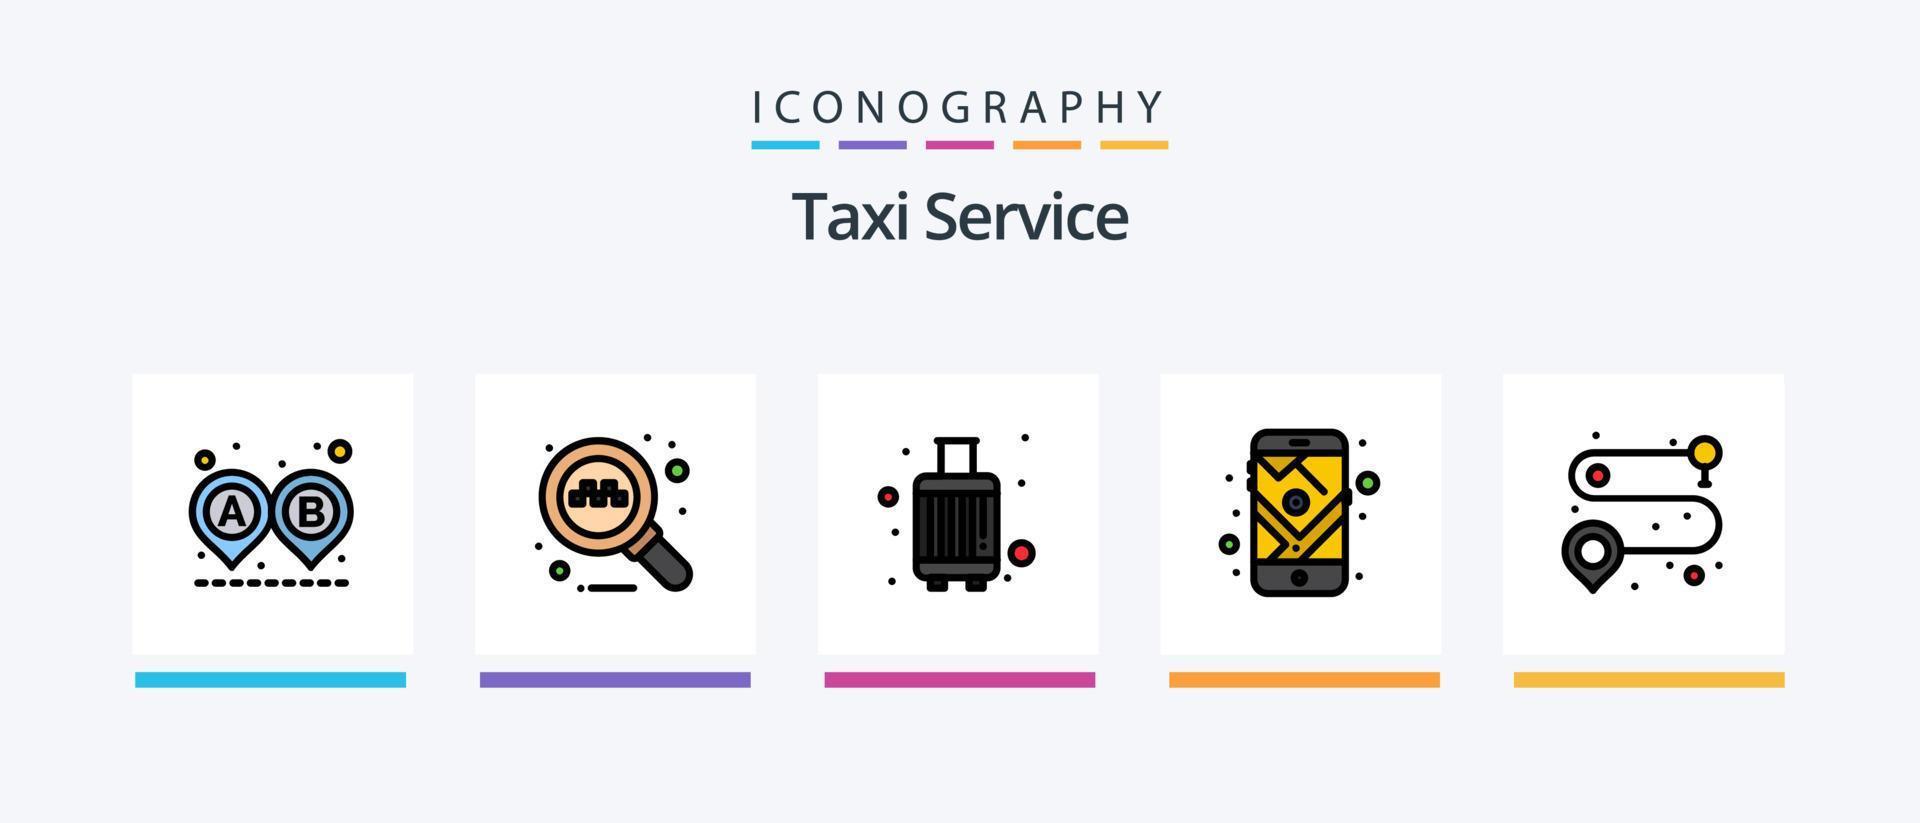 linha de serviço de táxi encheu o pacote de 5 ícones, incluindo gps. fumar. aeroporto. não. ponto de taxi. design de ícones criativos vetor